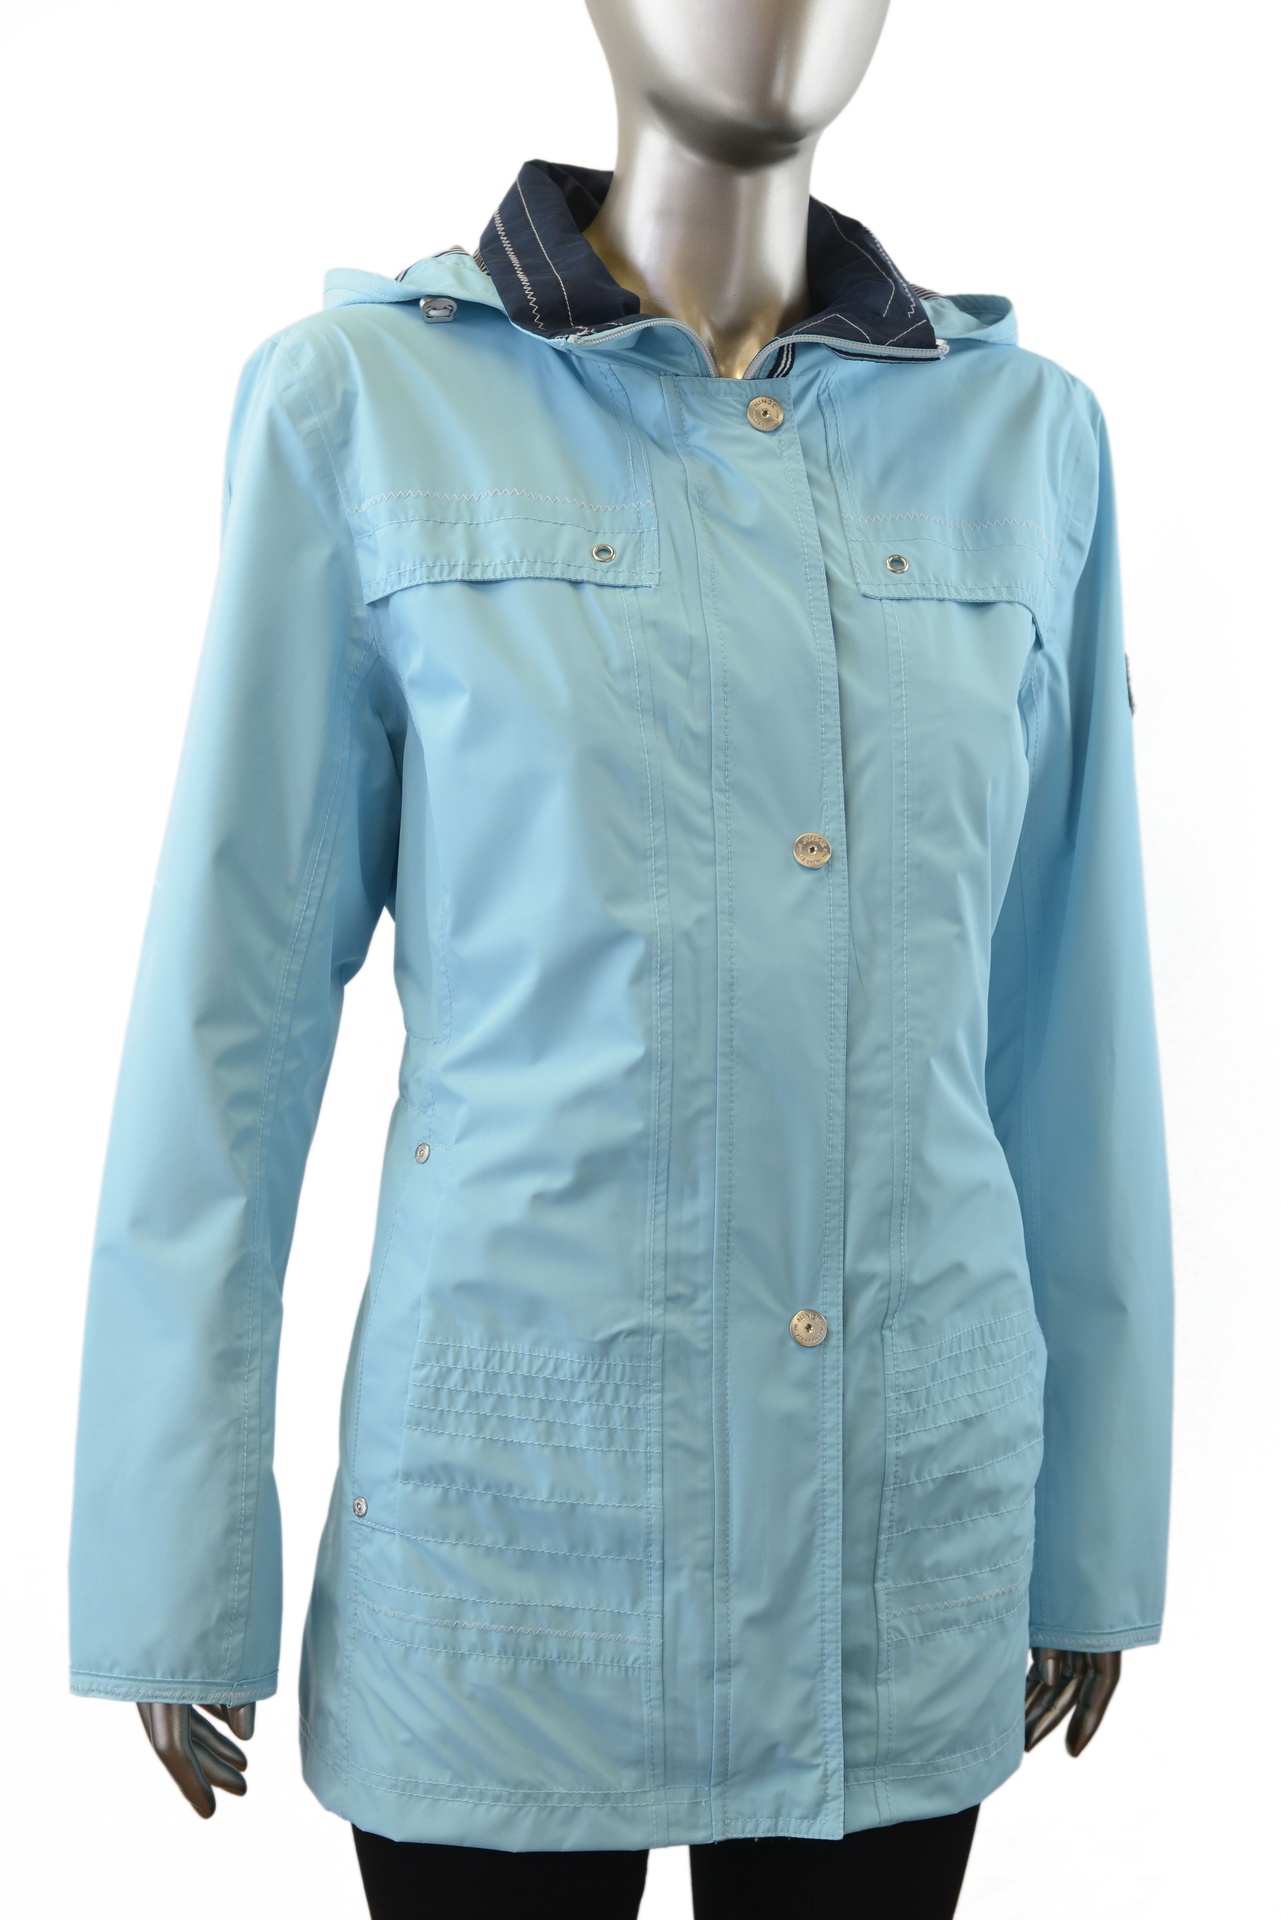 Junge | 2875-88 | Waterproof Jacket | Light Blue | Spring Jackets | H.R ...